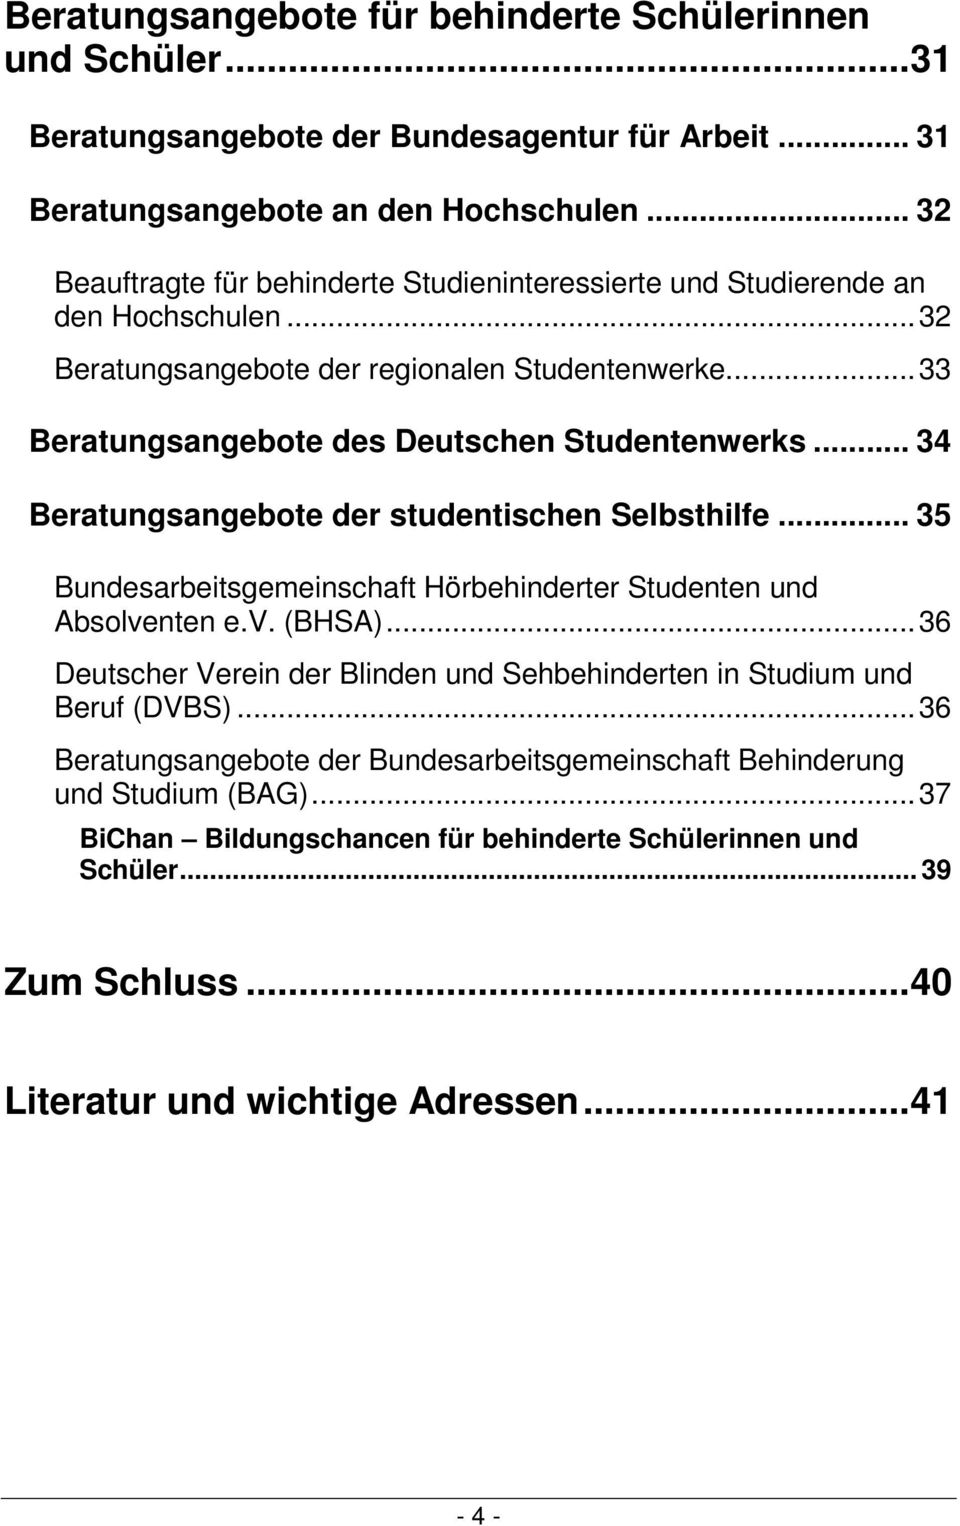 .. 34 Beratungsangebote der studentischen Selbsthilfe... 35 Bundesarbeitsgemeinschaft Hörbehinderter Studenten und Absolventen e.v. (BHSA).